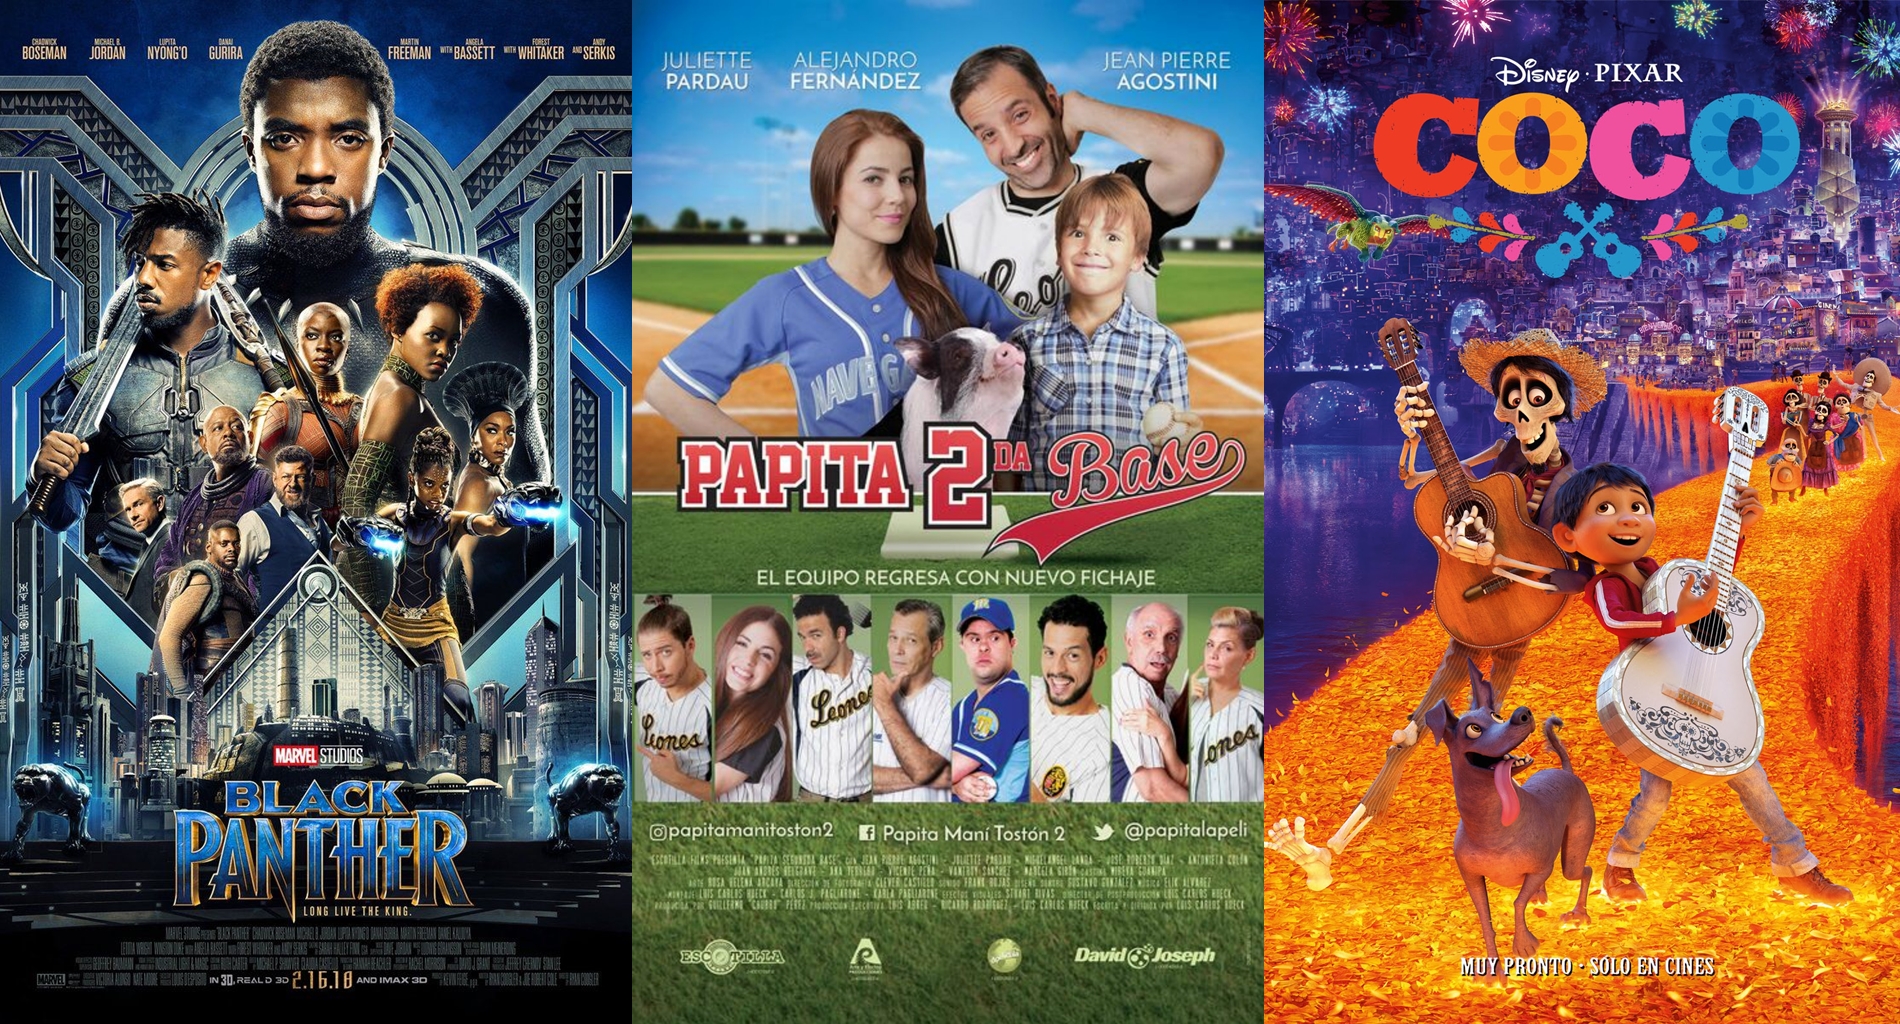 Cines Unidos y Cinex tienen en cartelera cintas de diversos géneros que puedes disfrutar este fin de semana, tanto venezolanas como de la industria hollywoodense.